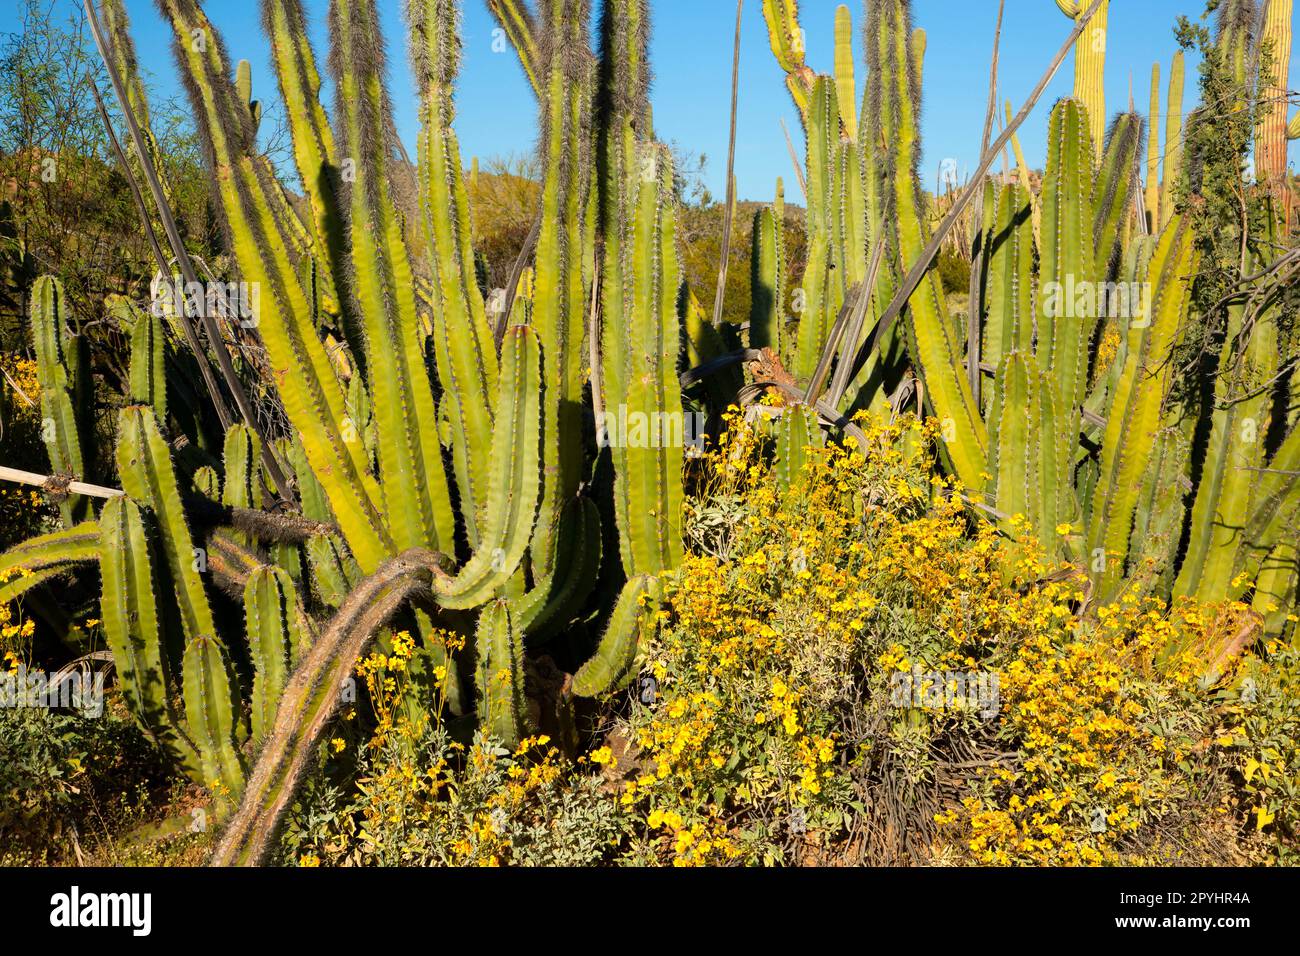 Senita cactus in Senita Basin, Organ Pipe Cactus National Monument, Arizona Stock Photo